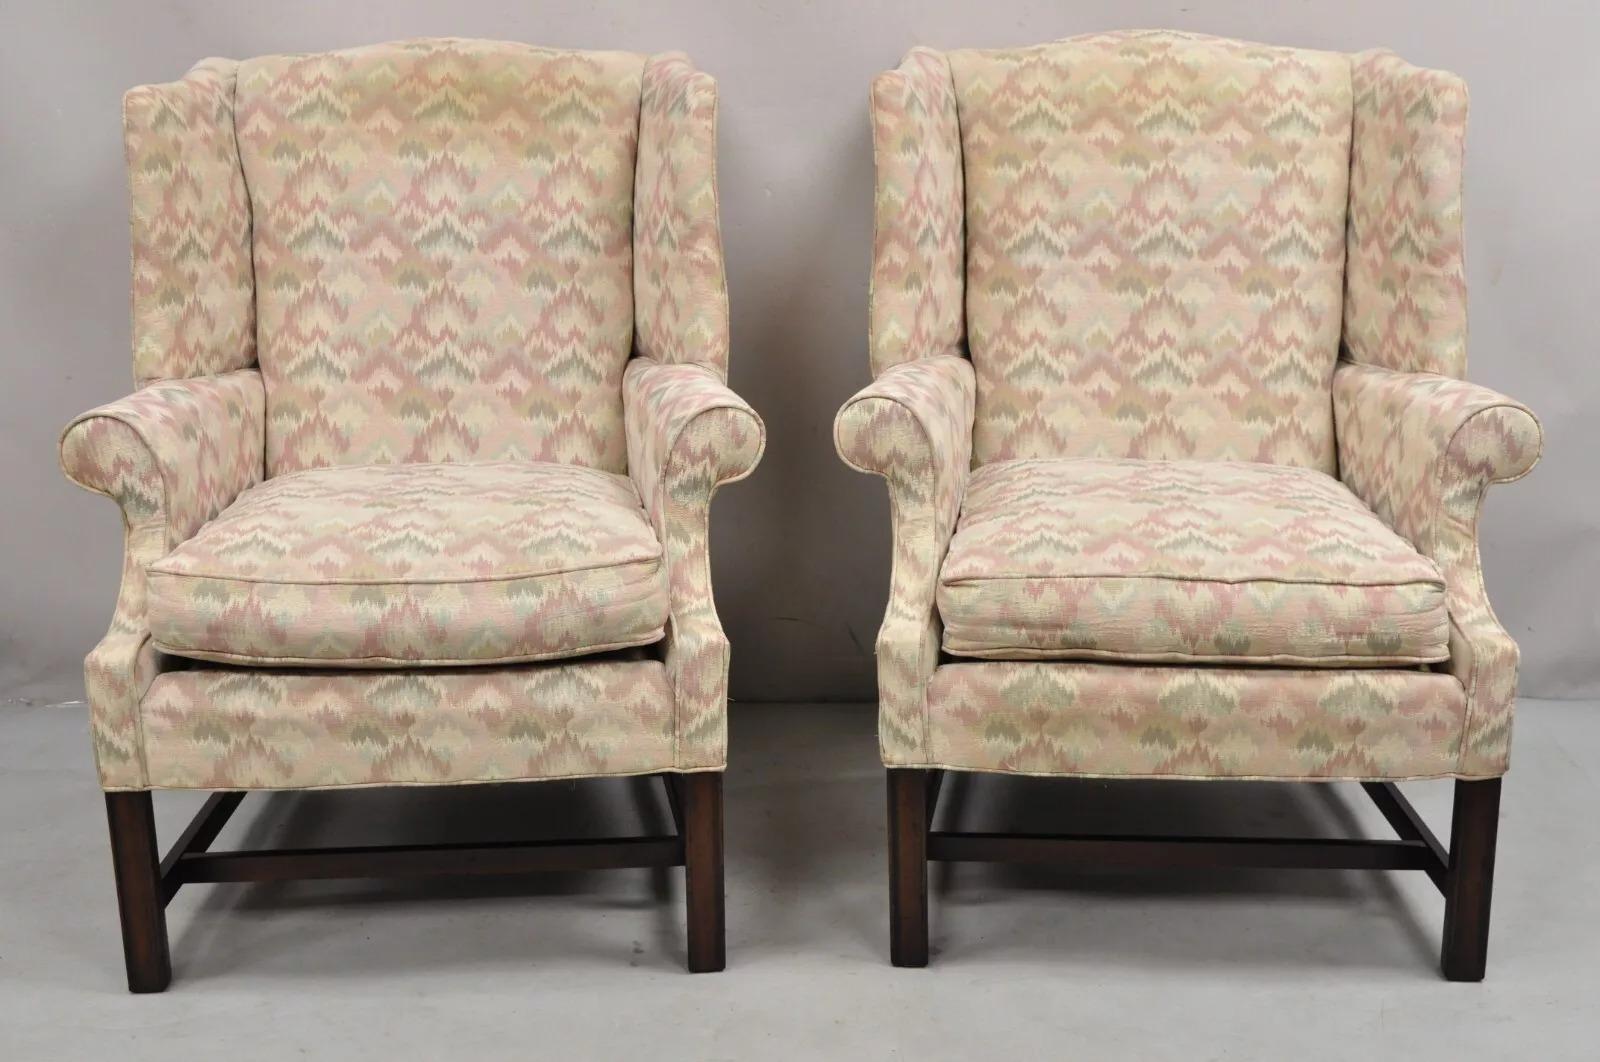 Paire de chaises à accoudoirs vintage Frederick Edward de style géorgien avec pieds en bois de cerisier. Fabriqué en Amérique avec un rembourrage rose, vert et beige. Circa Late 20th Century. Dimensions : 41